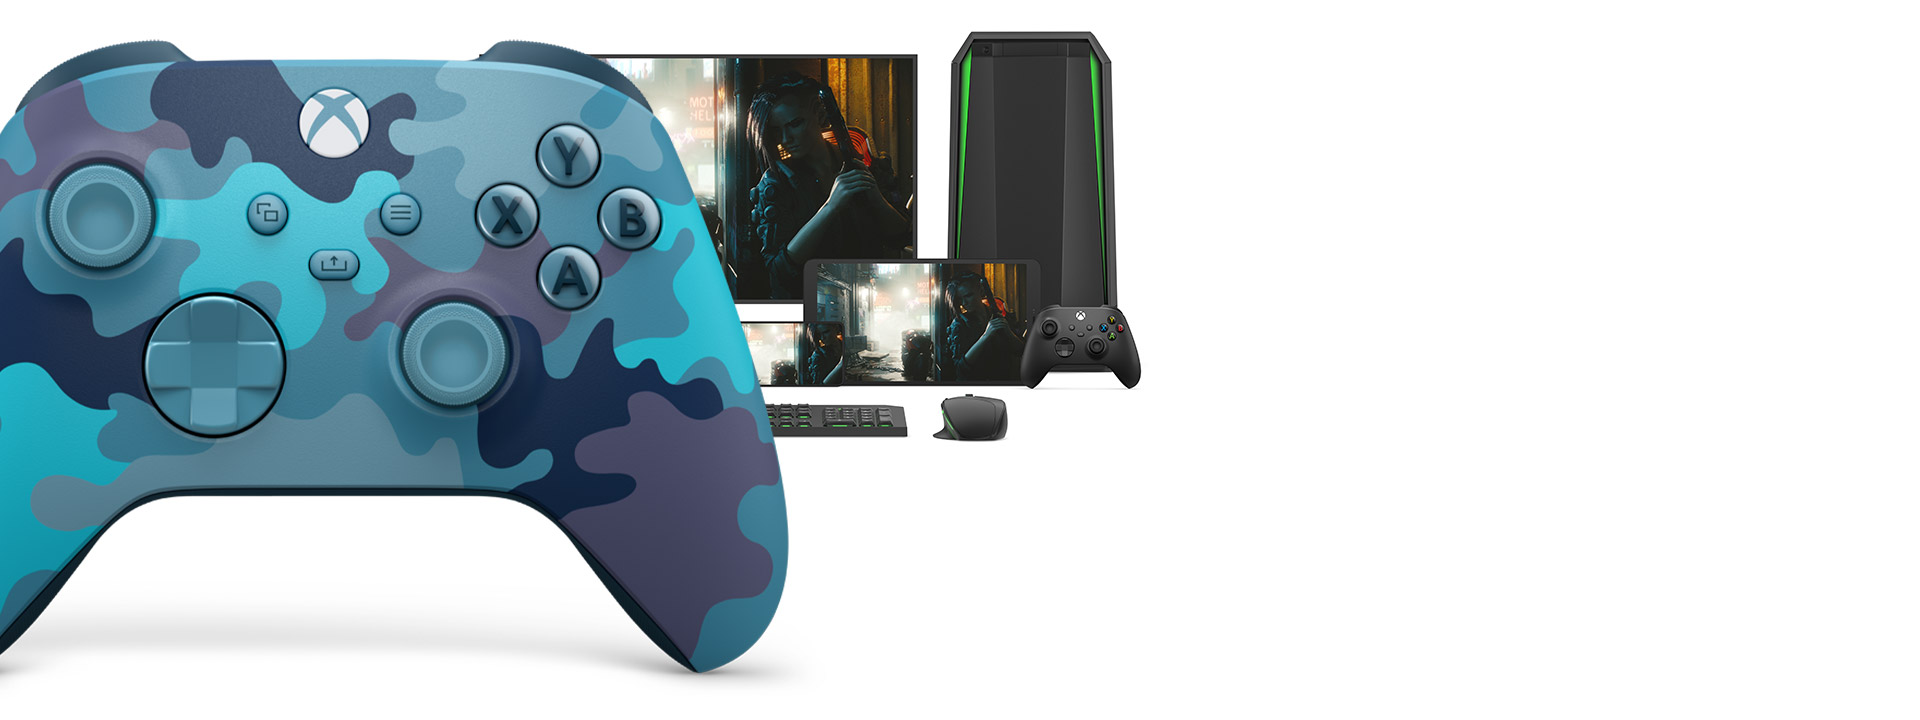 Trådløs Xbox-controller Mineralkamu med en computer, tv og en Xbox Series S